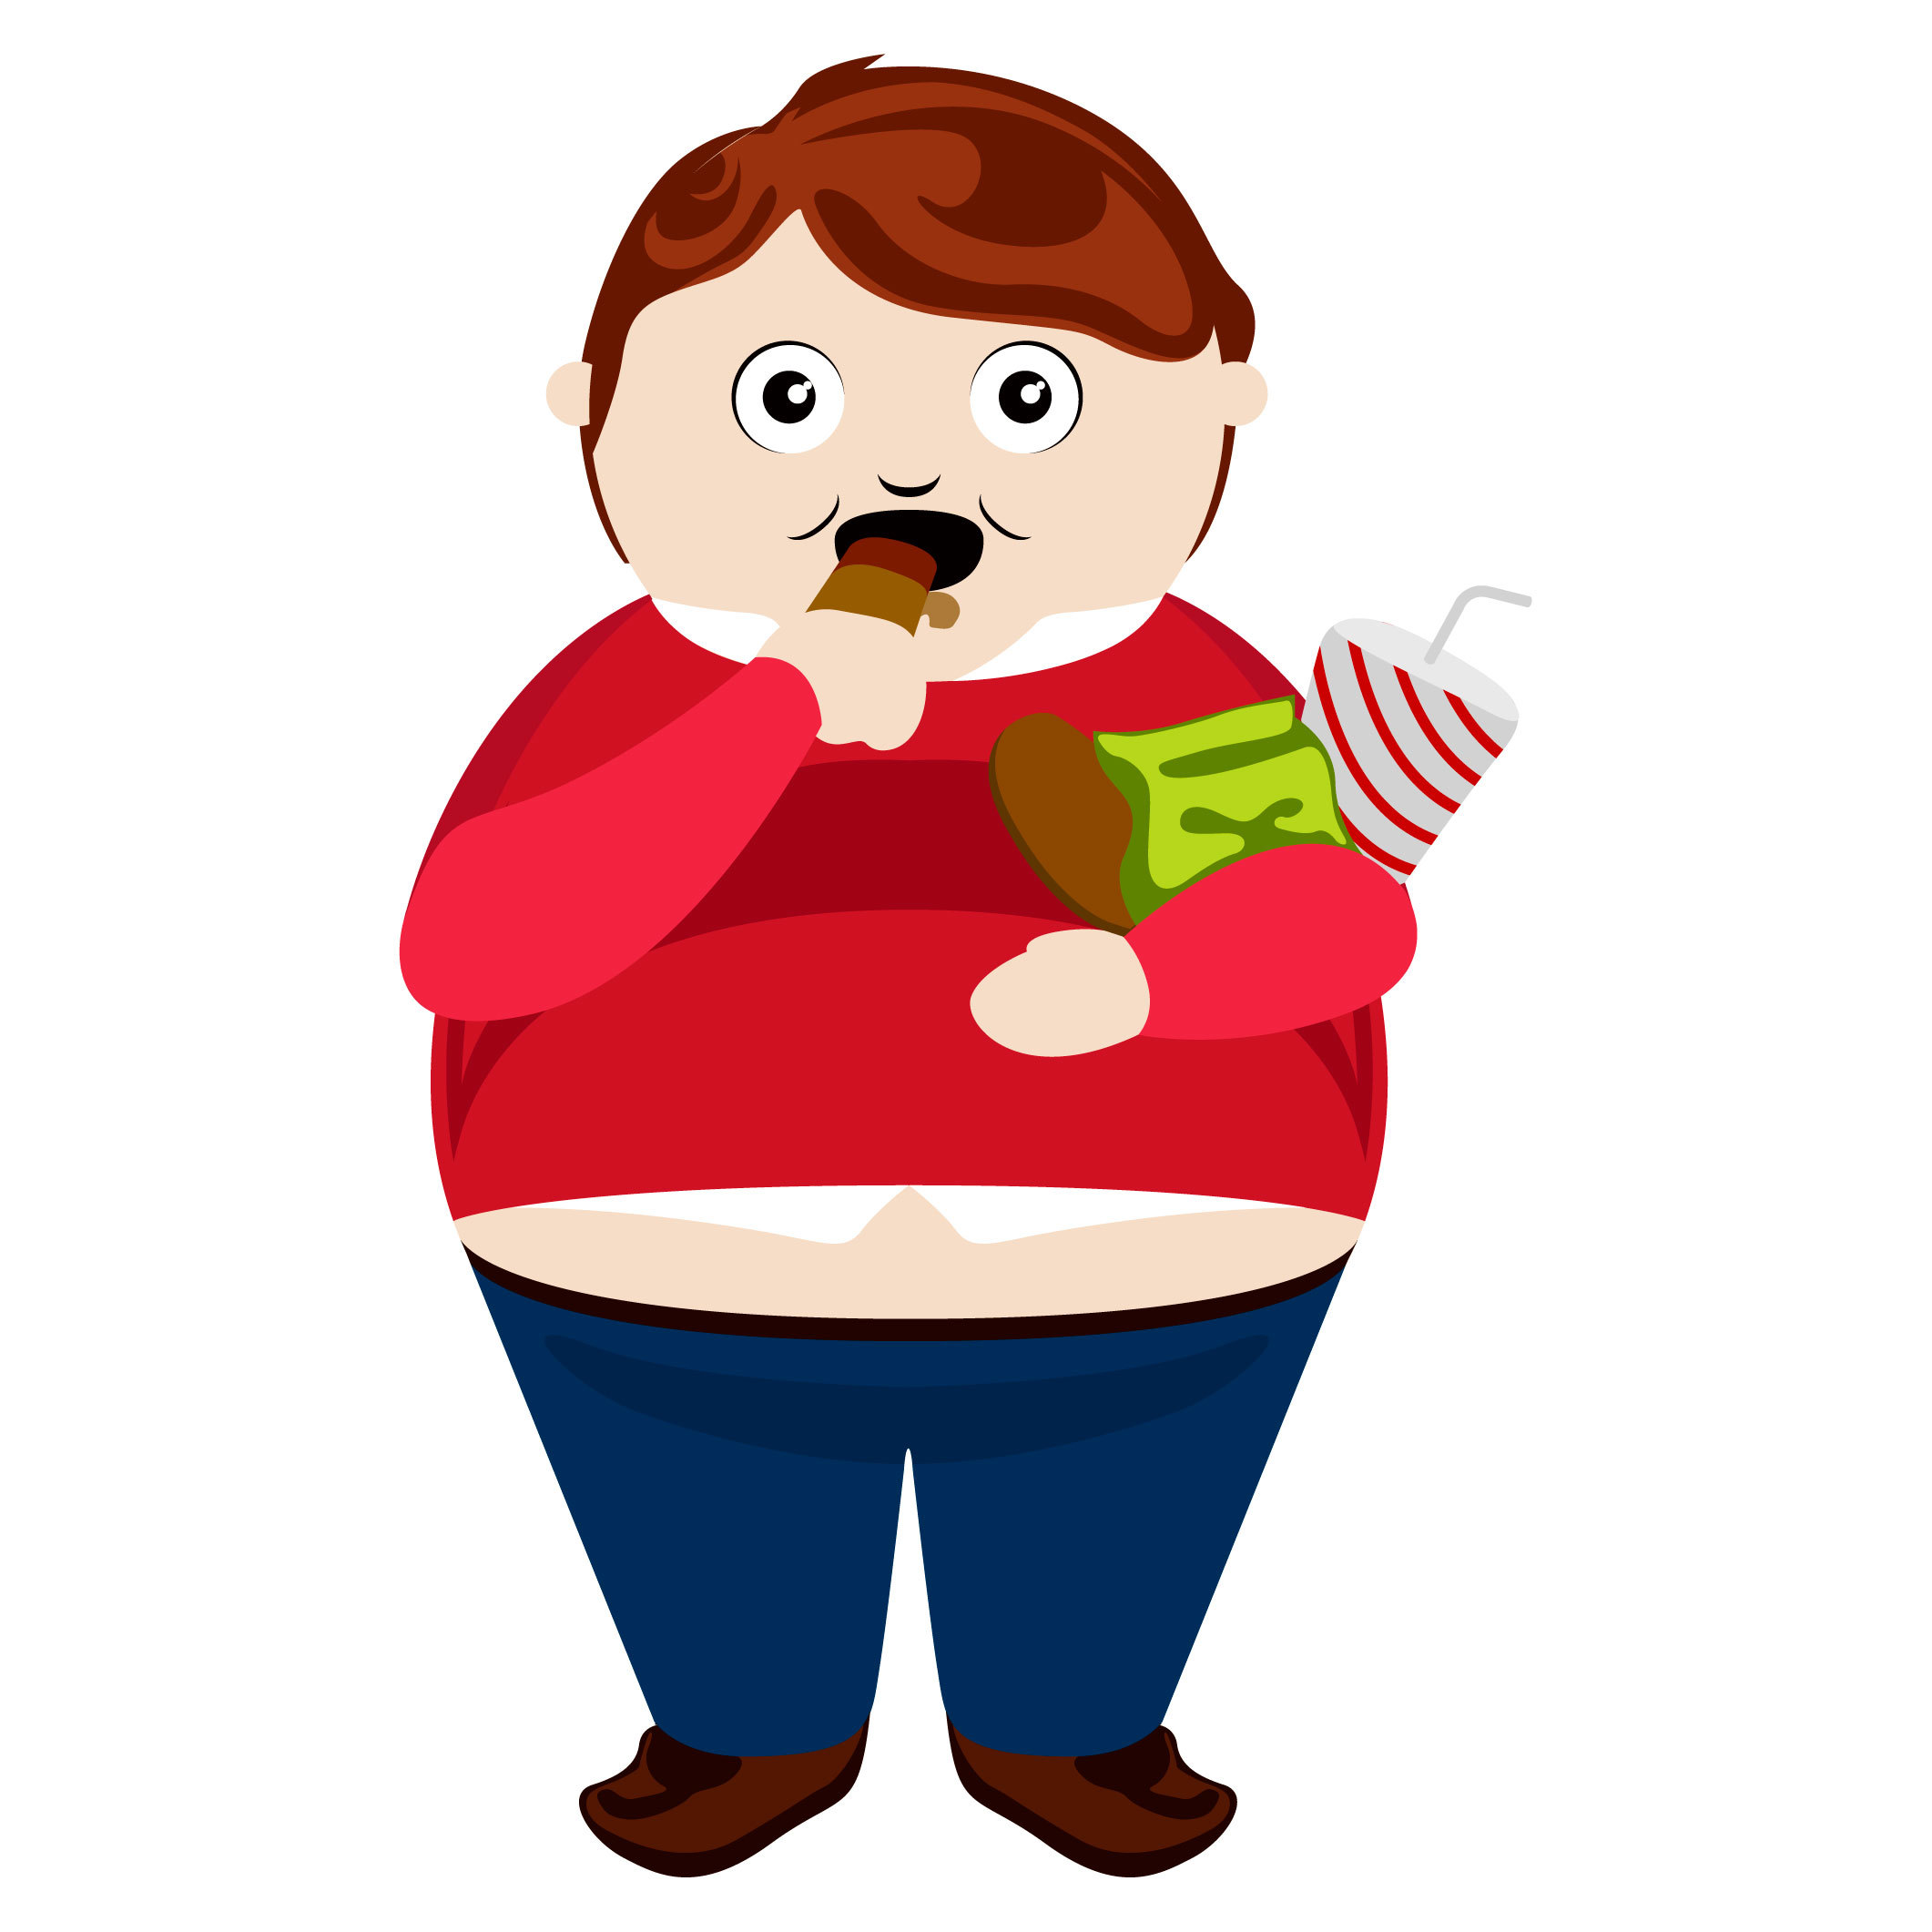 近半國人過重 超胖小孩就醫增83% | 健康瘦身 | 瘦身 | 元氣網